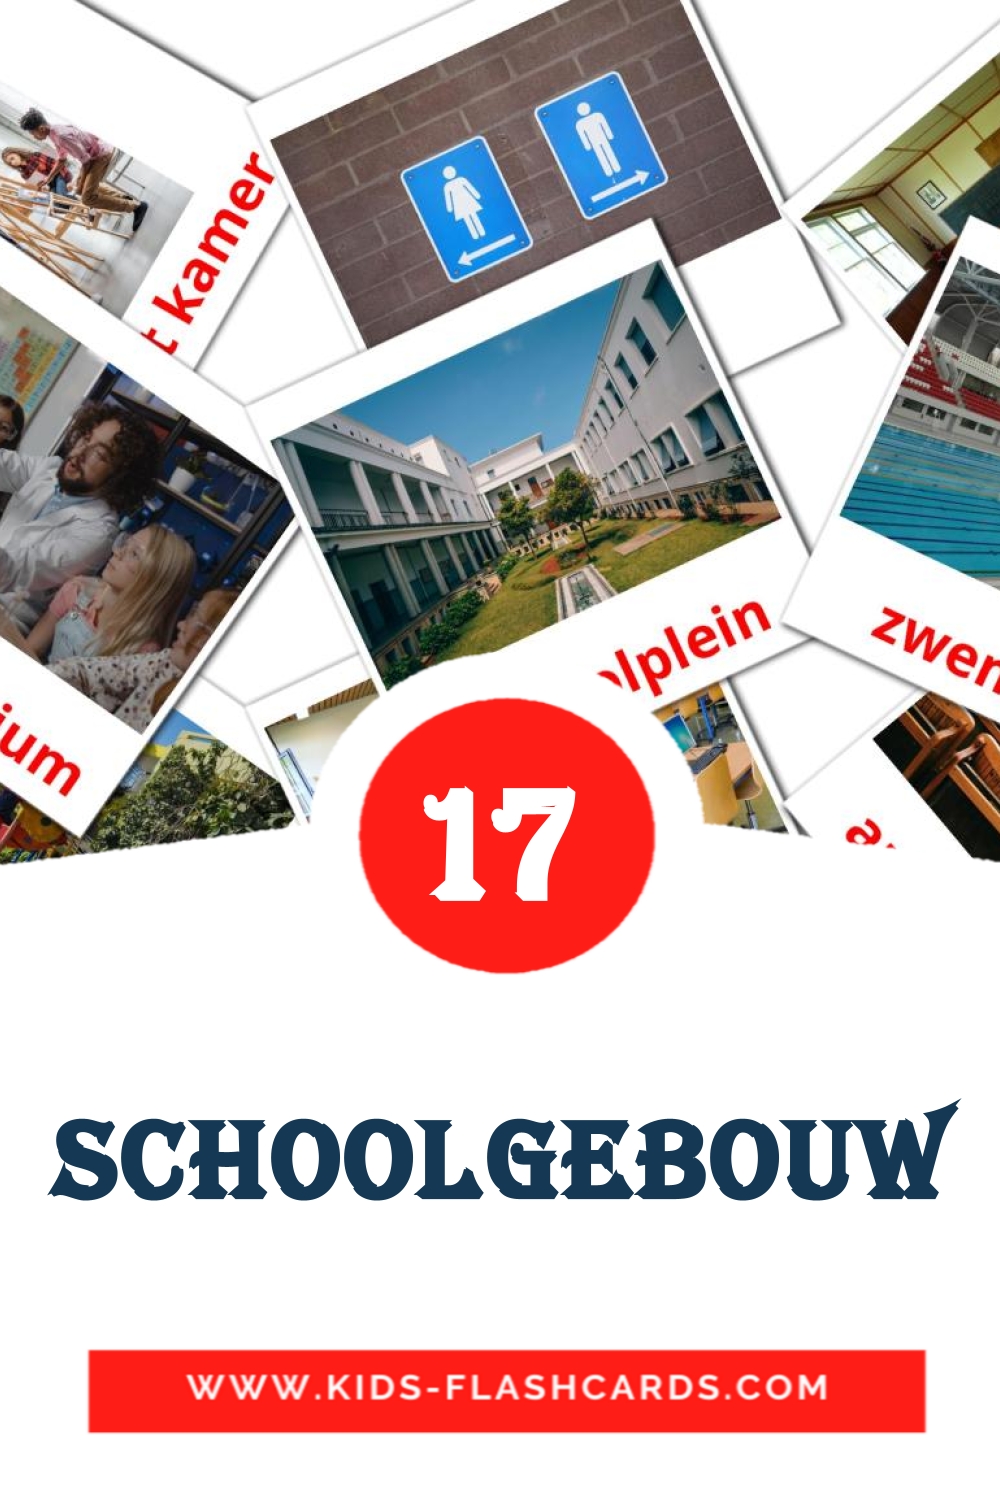 Schoolgebouw на нидерландcком для Детского Сада (17 карточек)